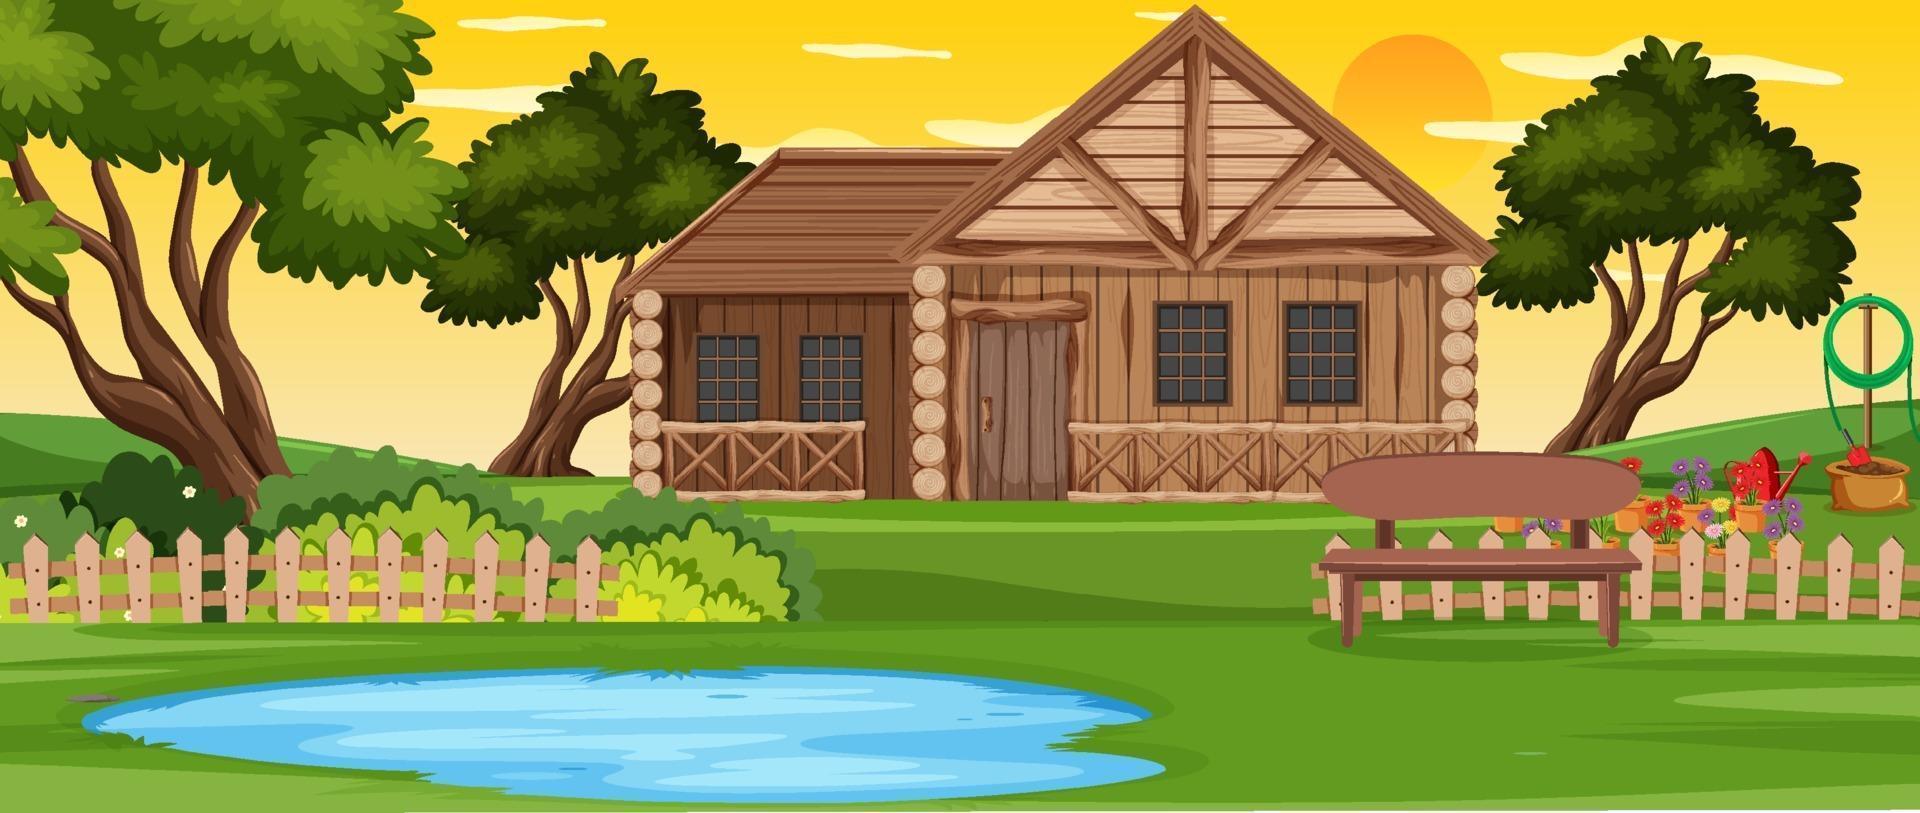 paisaje al aire libre de la casa de madera rural vector